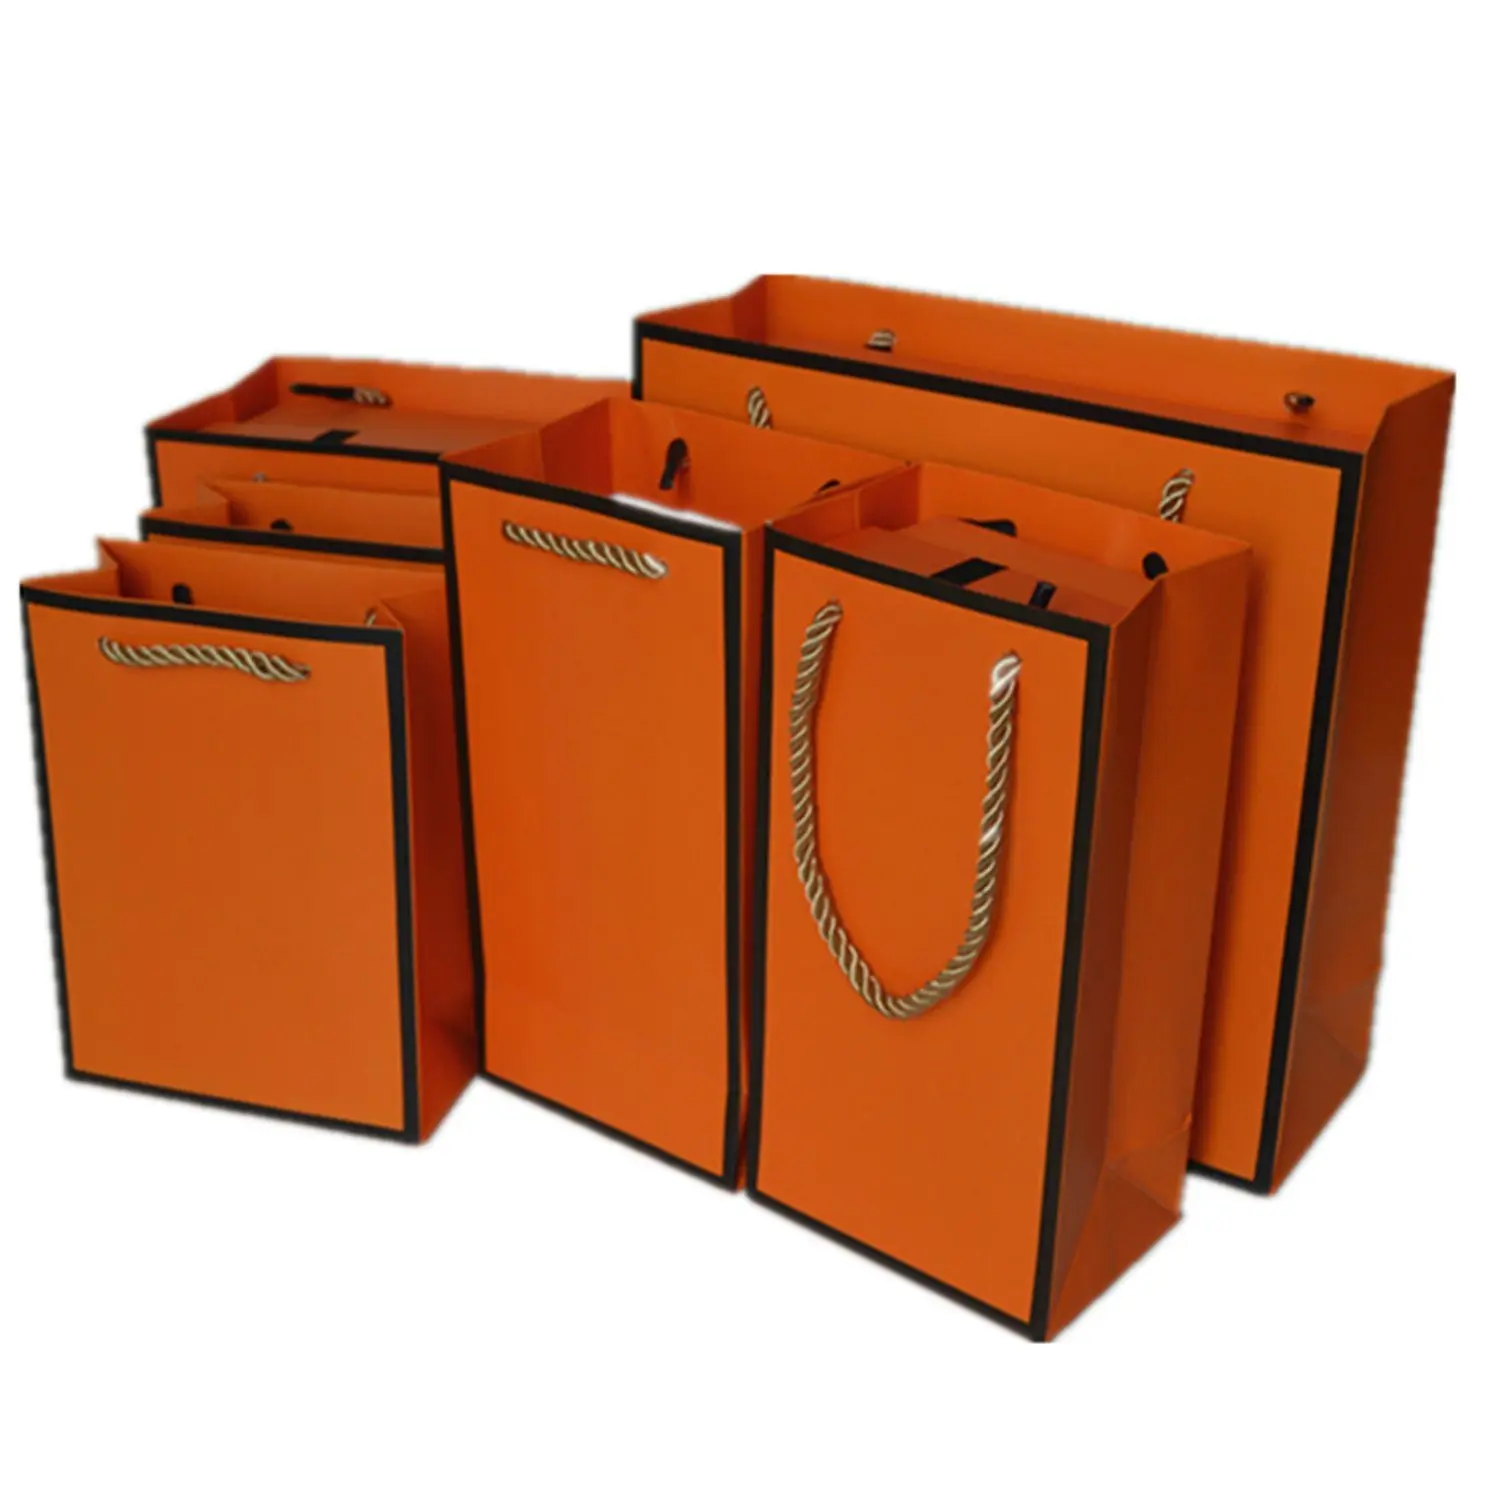 Kustom Warna oranye toko pakaian kemasan ritel hadiah tas jinjing butik tas belanja kertas dengan Logo Anda sendiri